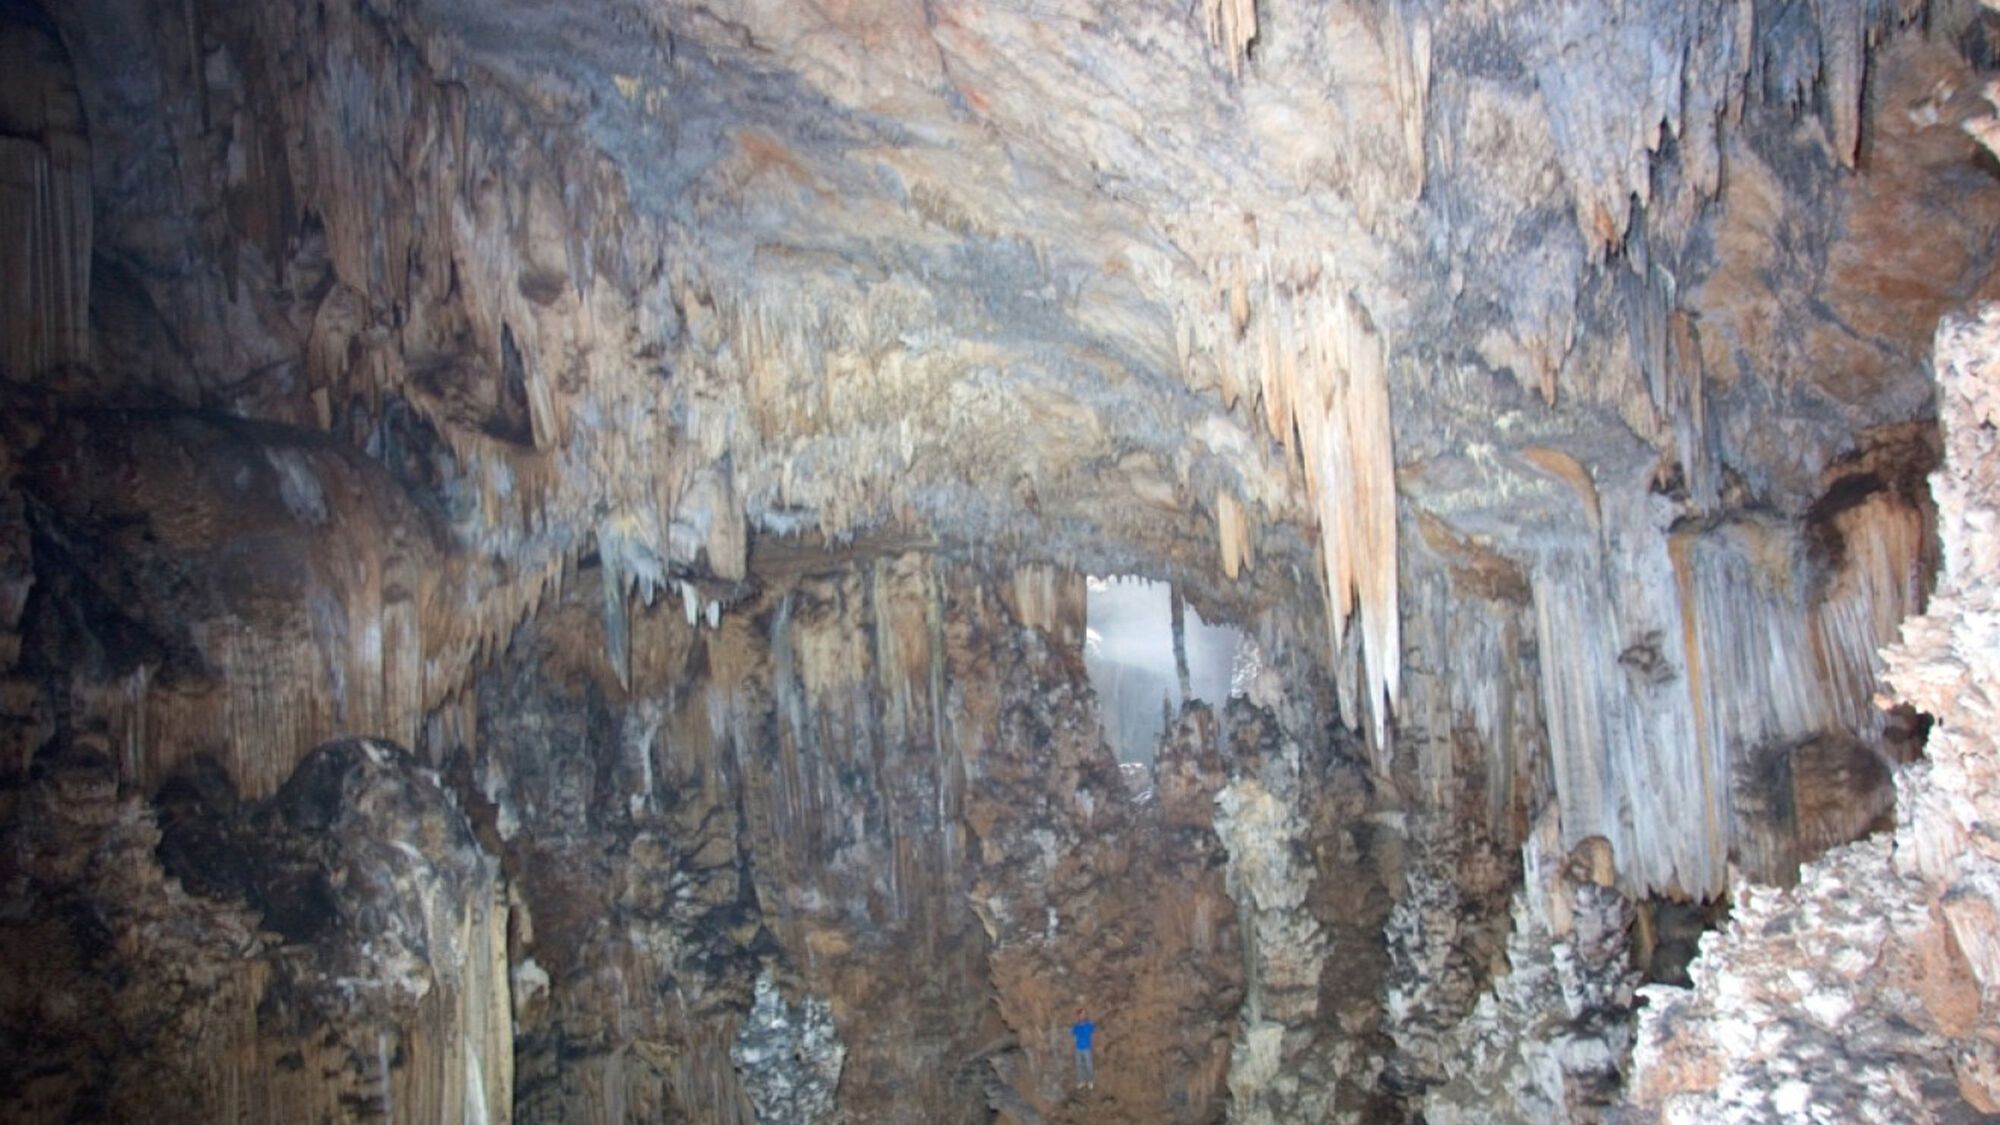 Печера опівнічного жаху (Midnight Terror) в Белізі